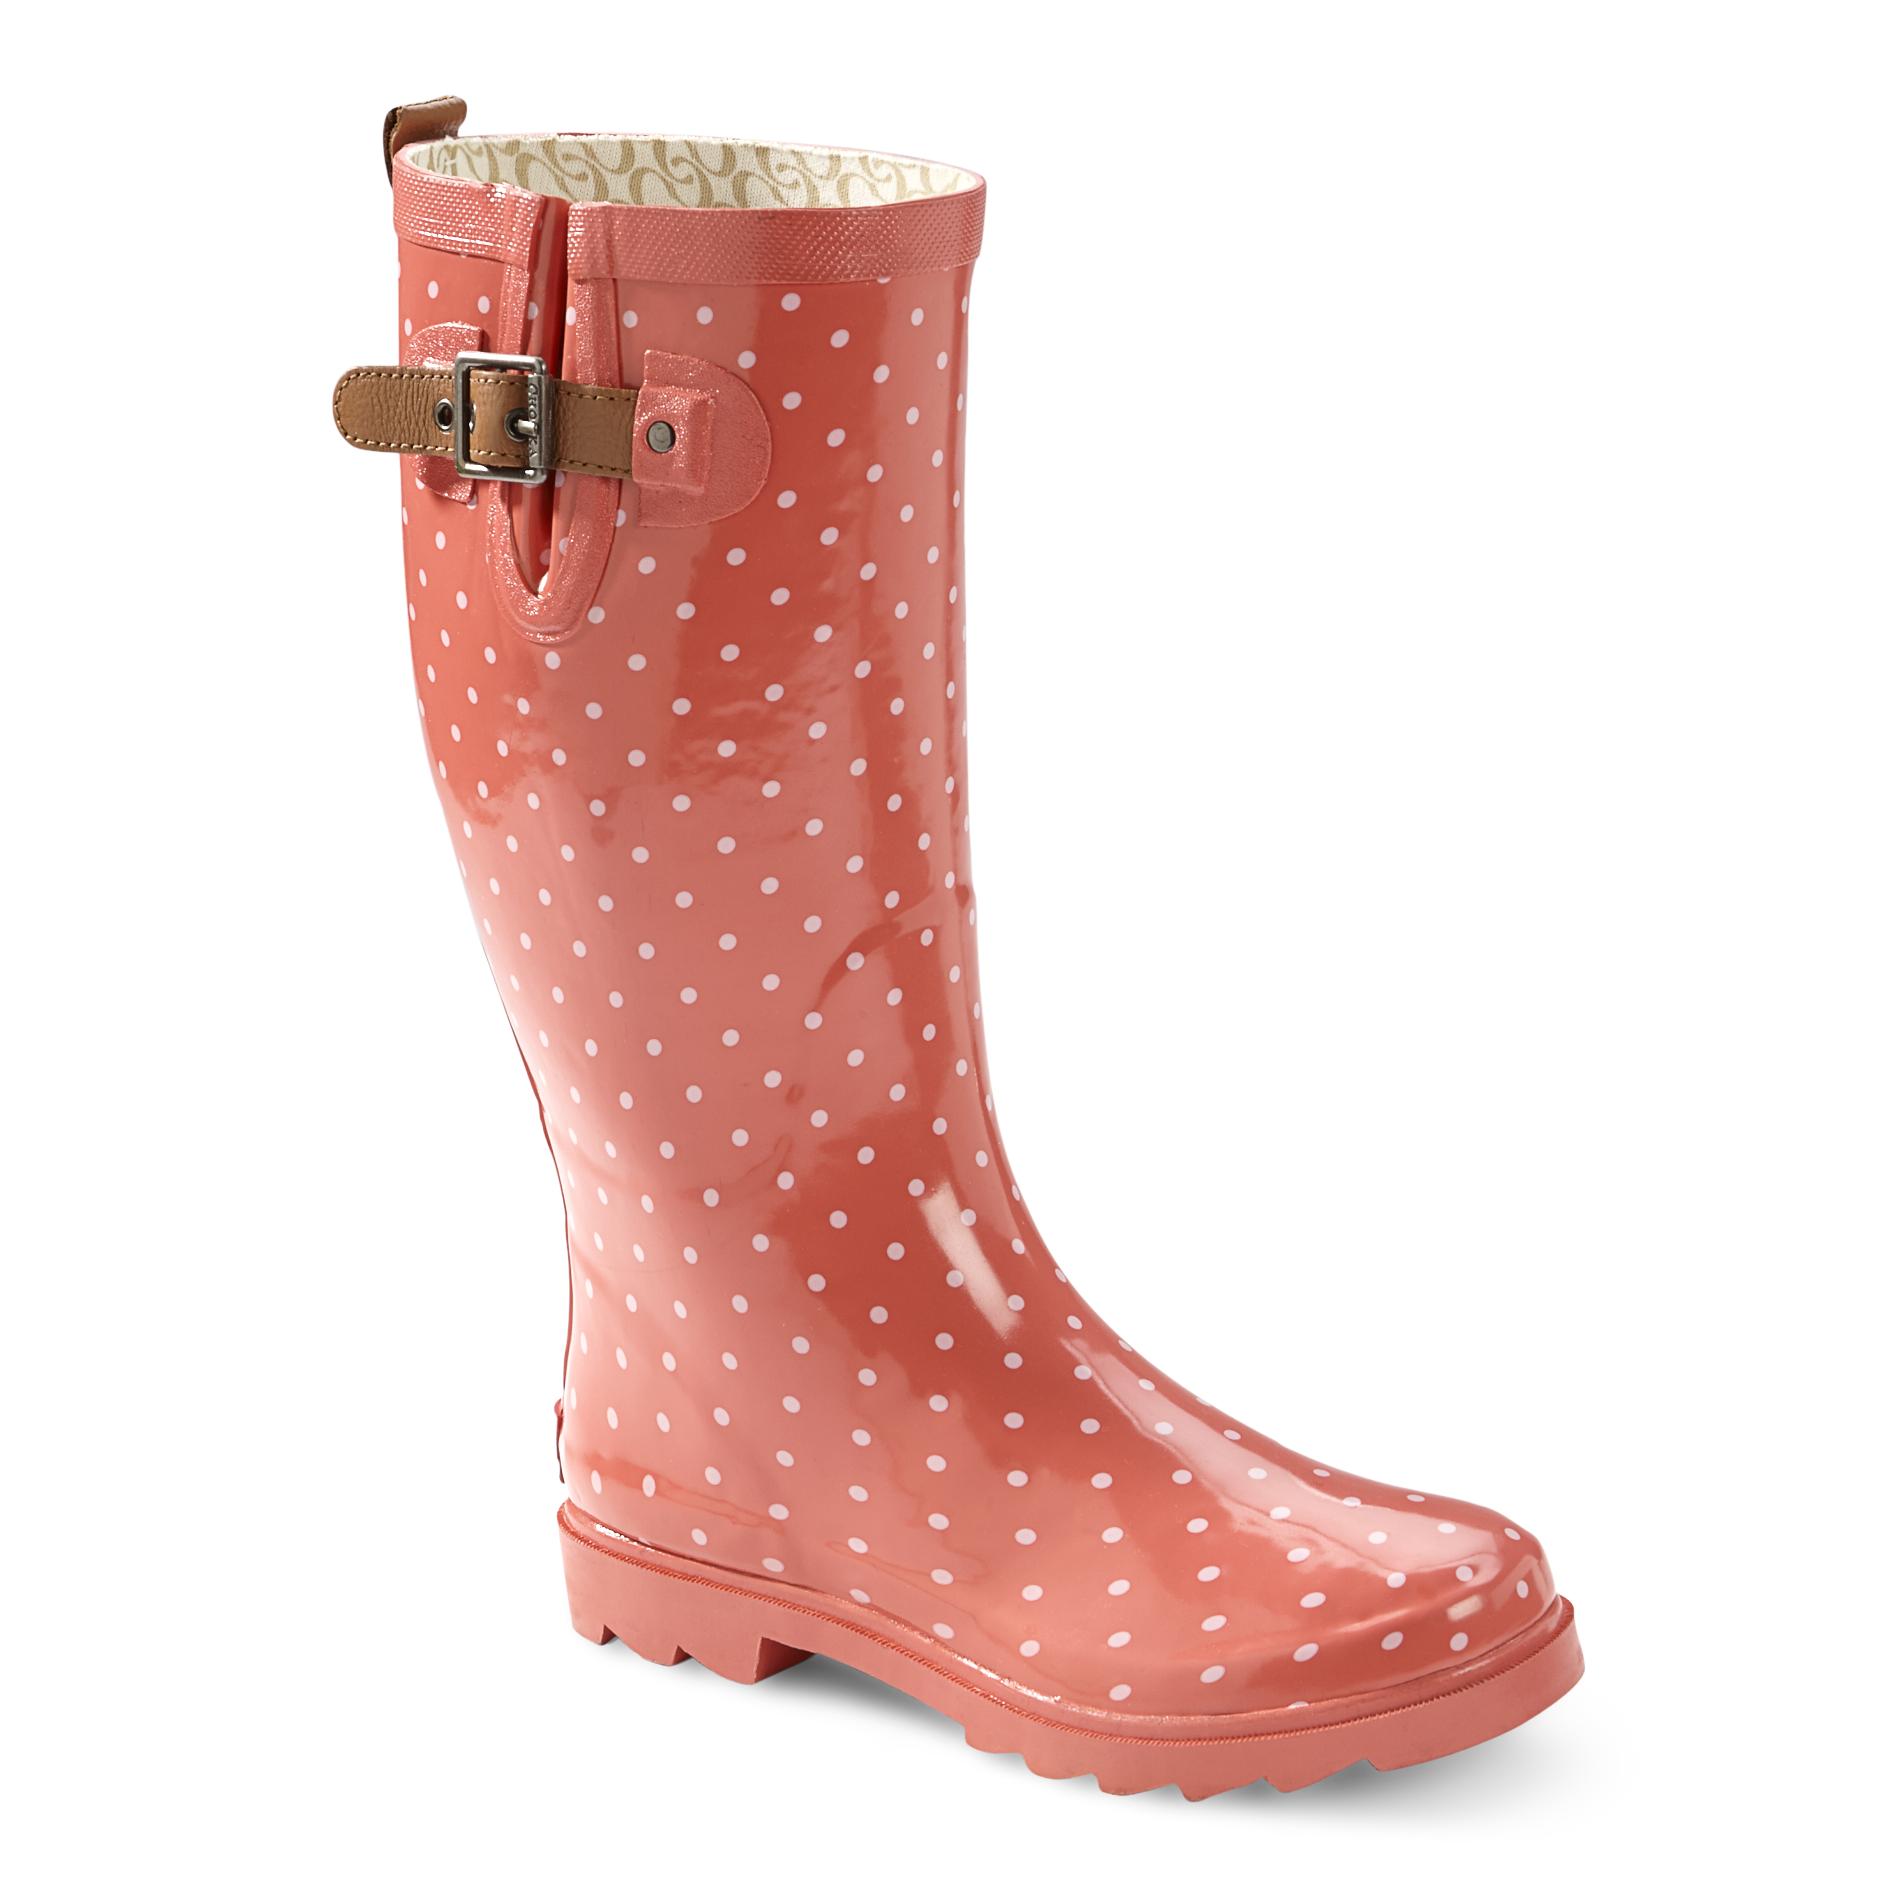 Chooka Women's 12" Pink Rubber Rain Boots - Polka Dot